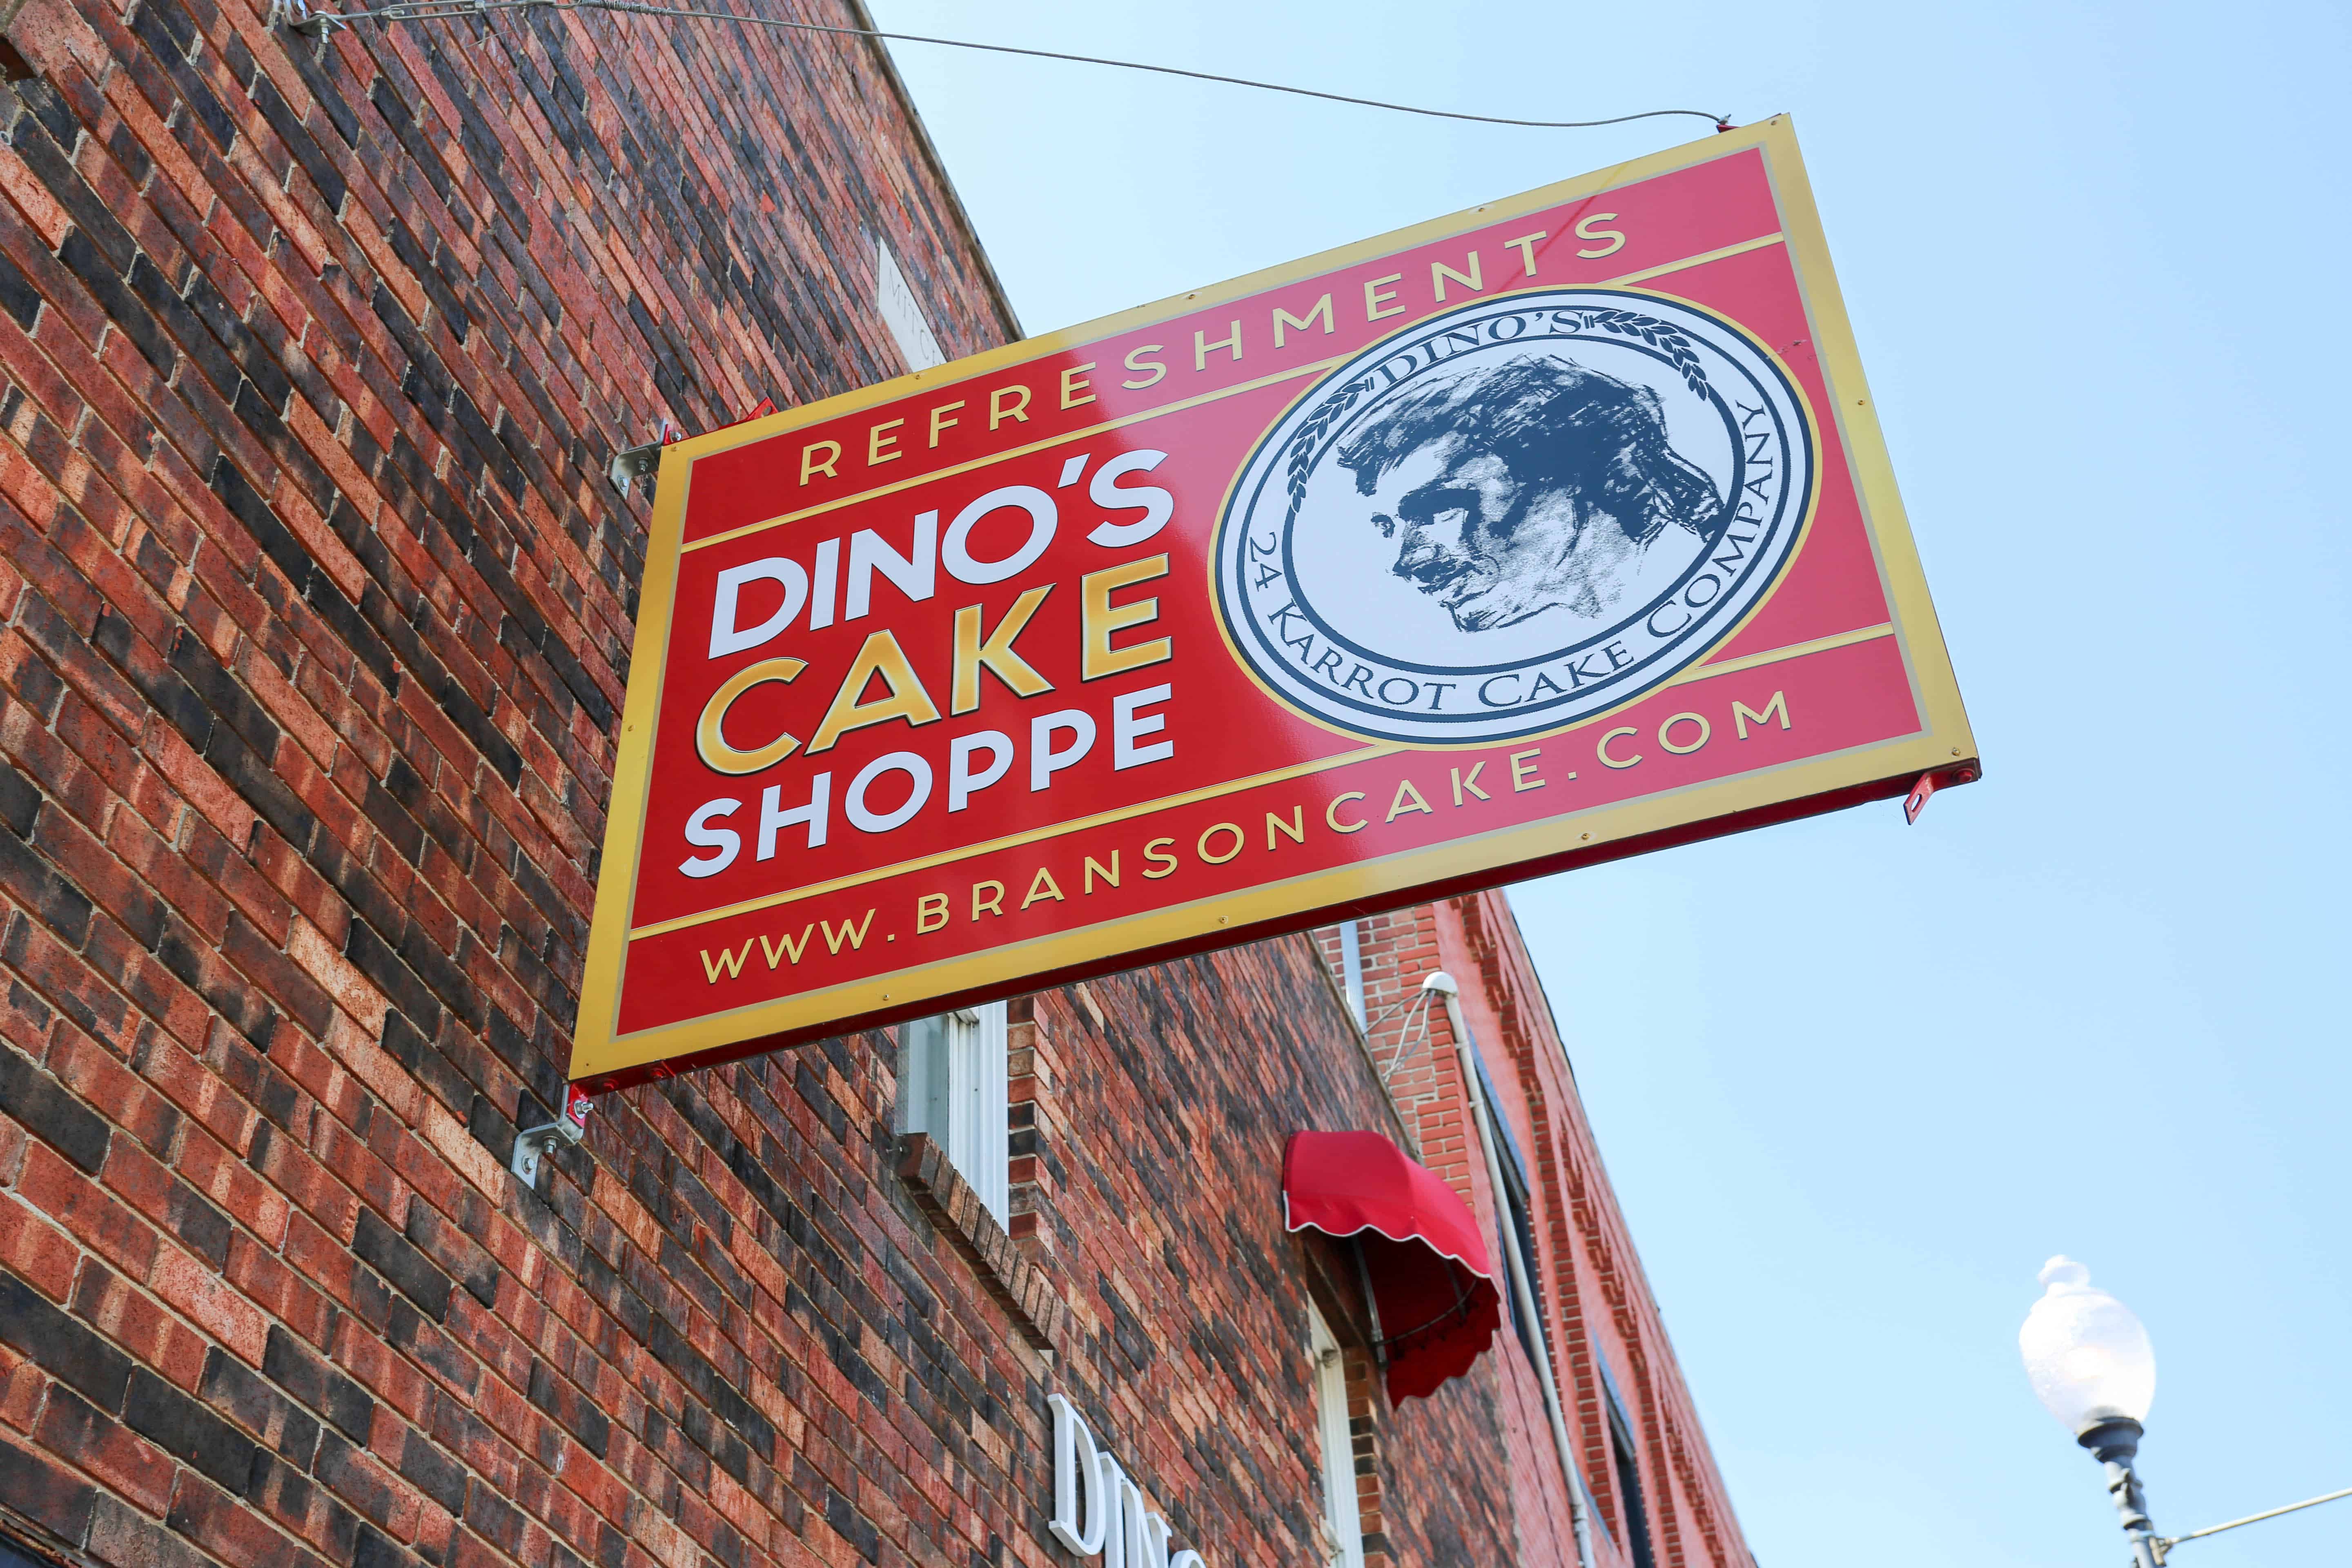 Dino's Cake Shoppe outdoor sign